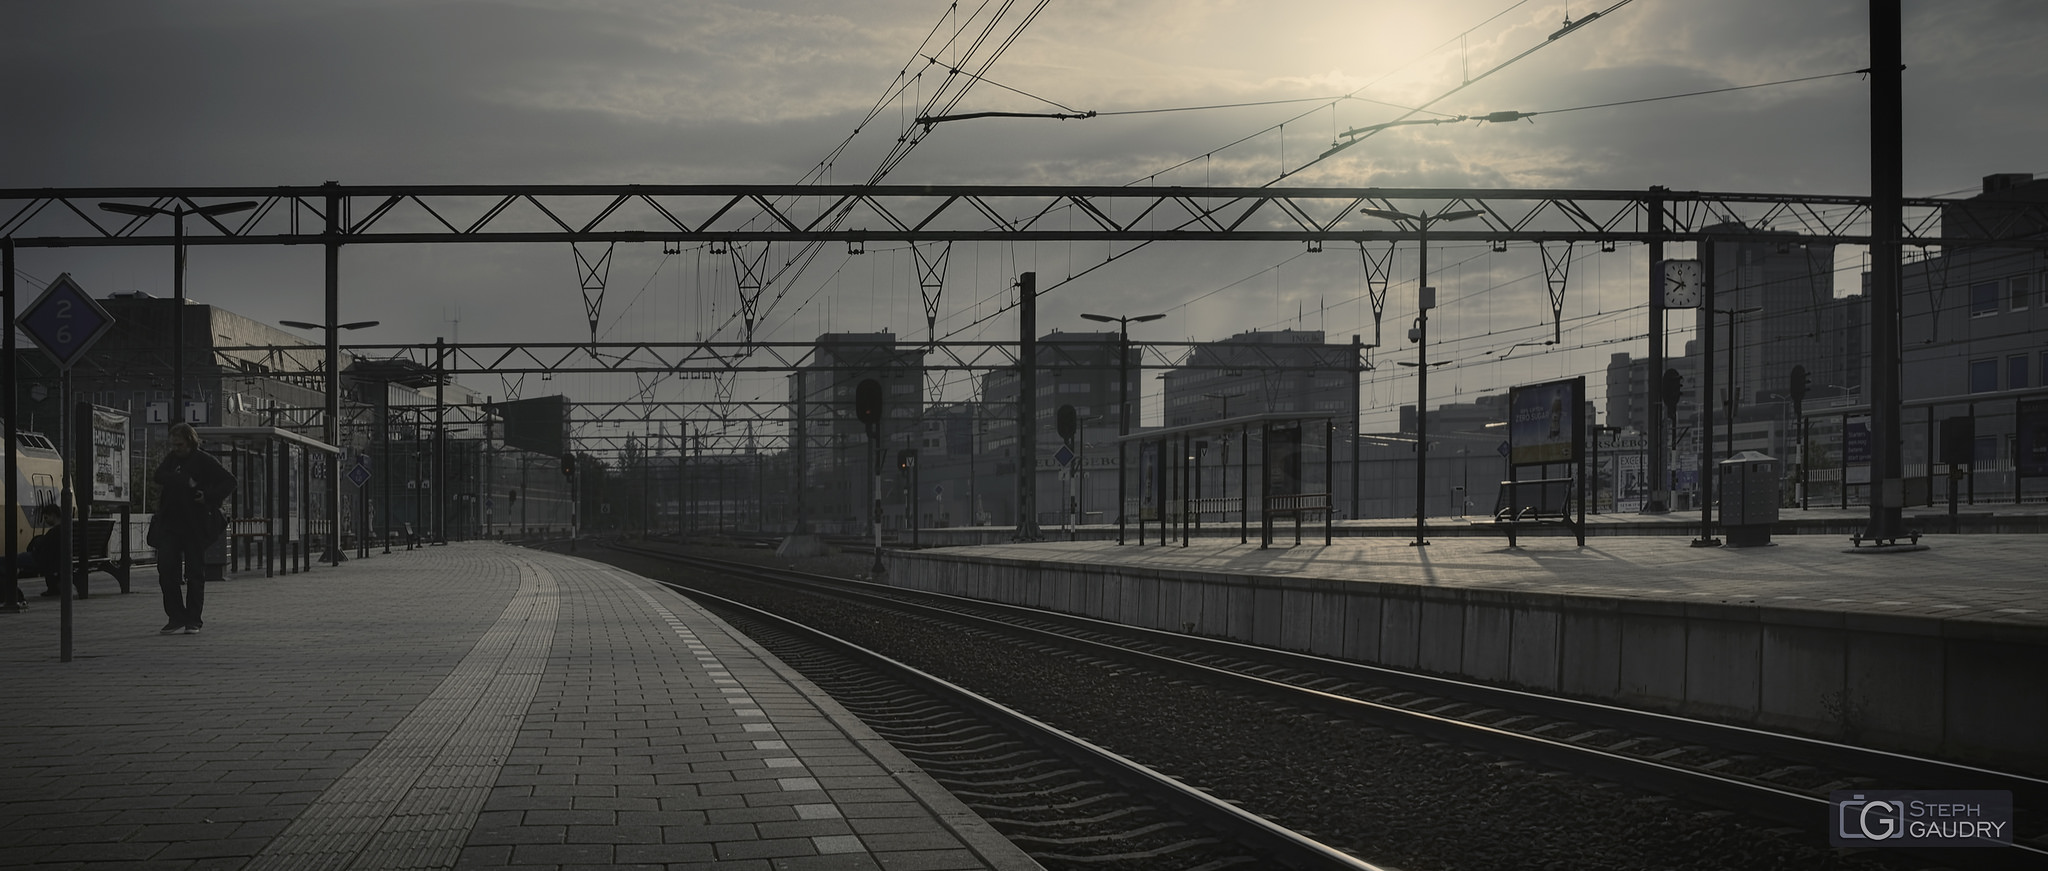 Eindhoven, les quais de la gare [Cliquez pour lancer le diaporama]